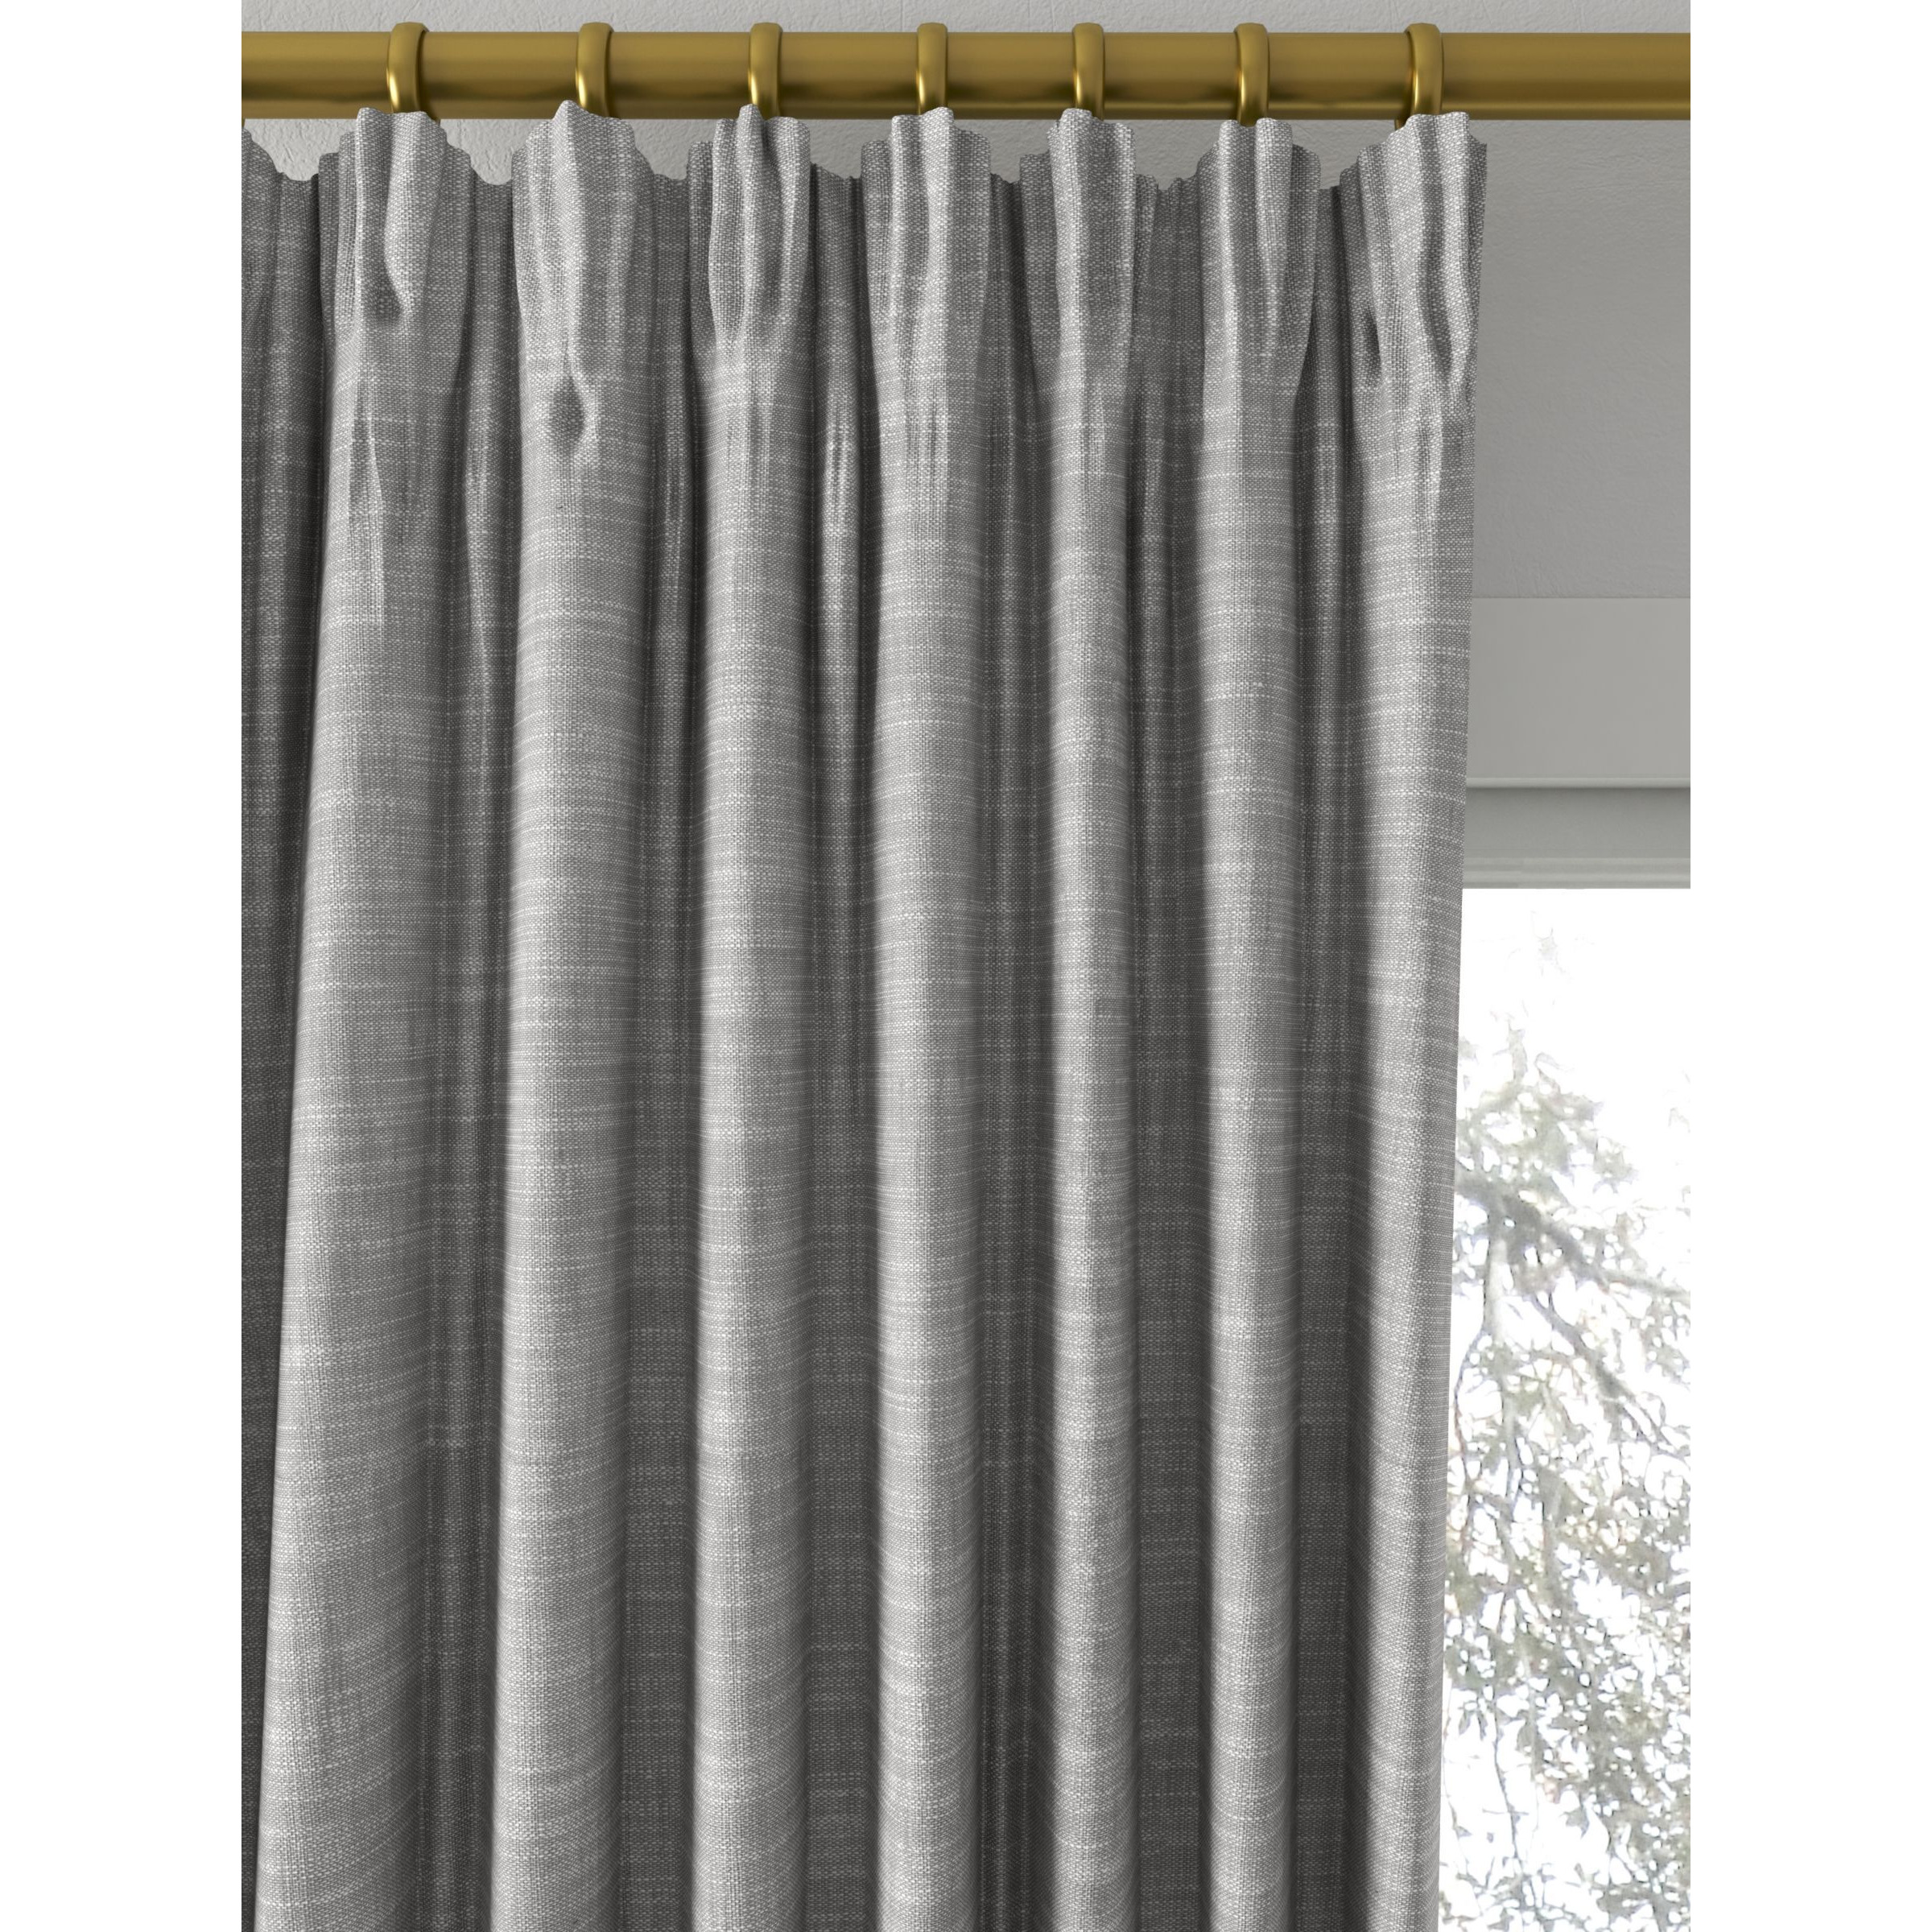 John Lewis Cotton Slub Lined Pencil Pleat Curtains - image 1